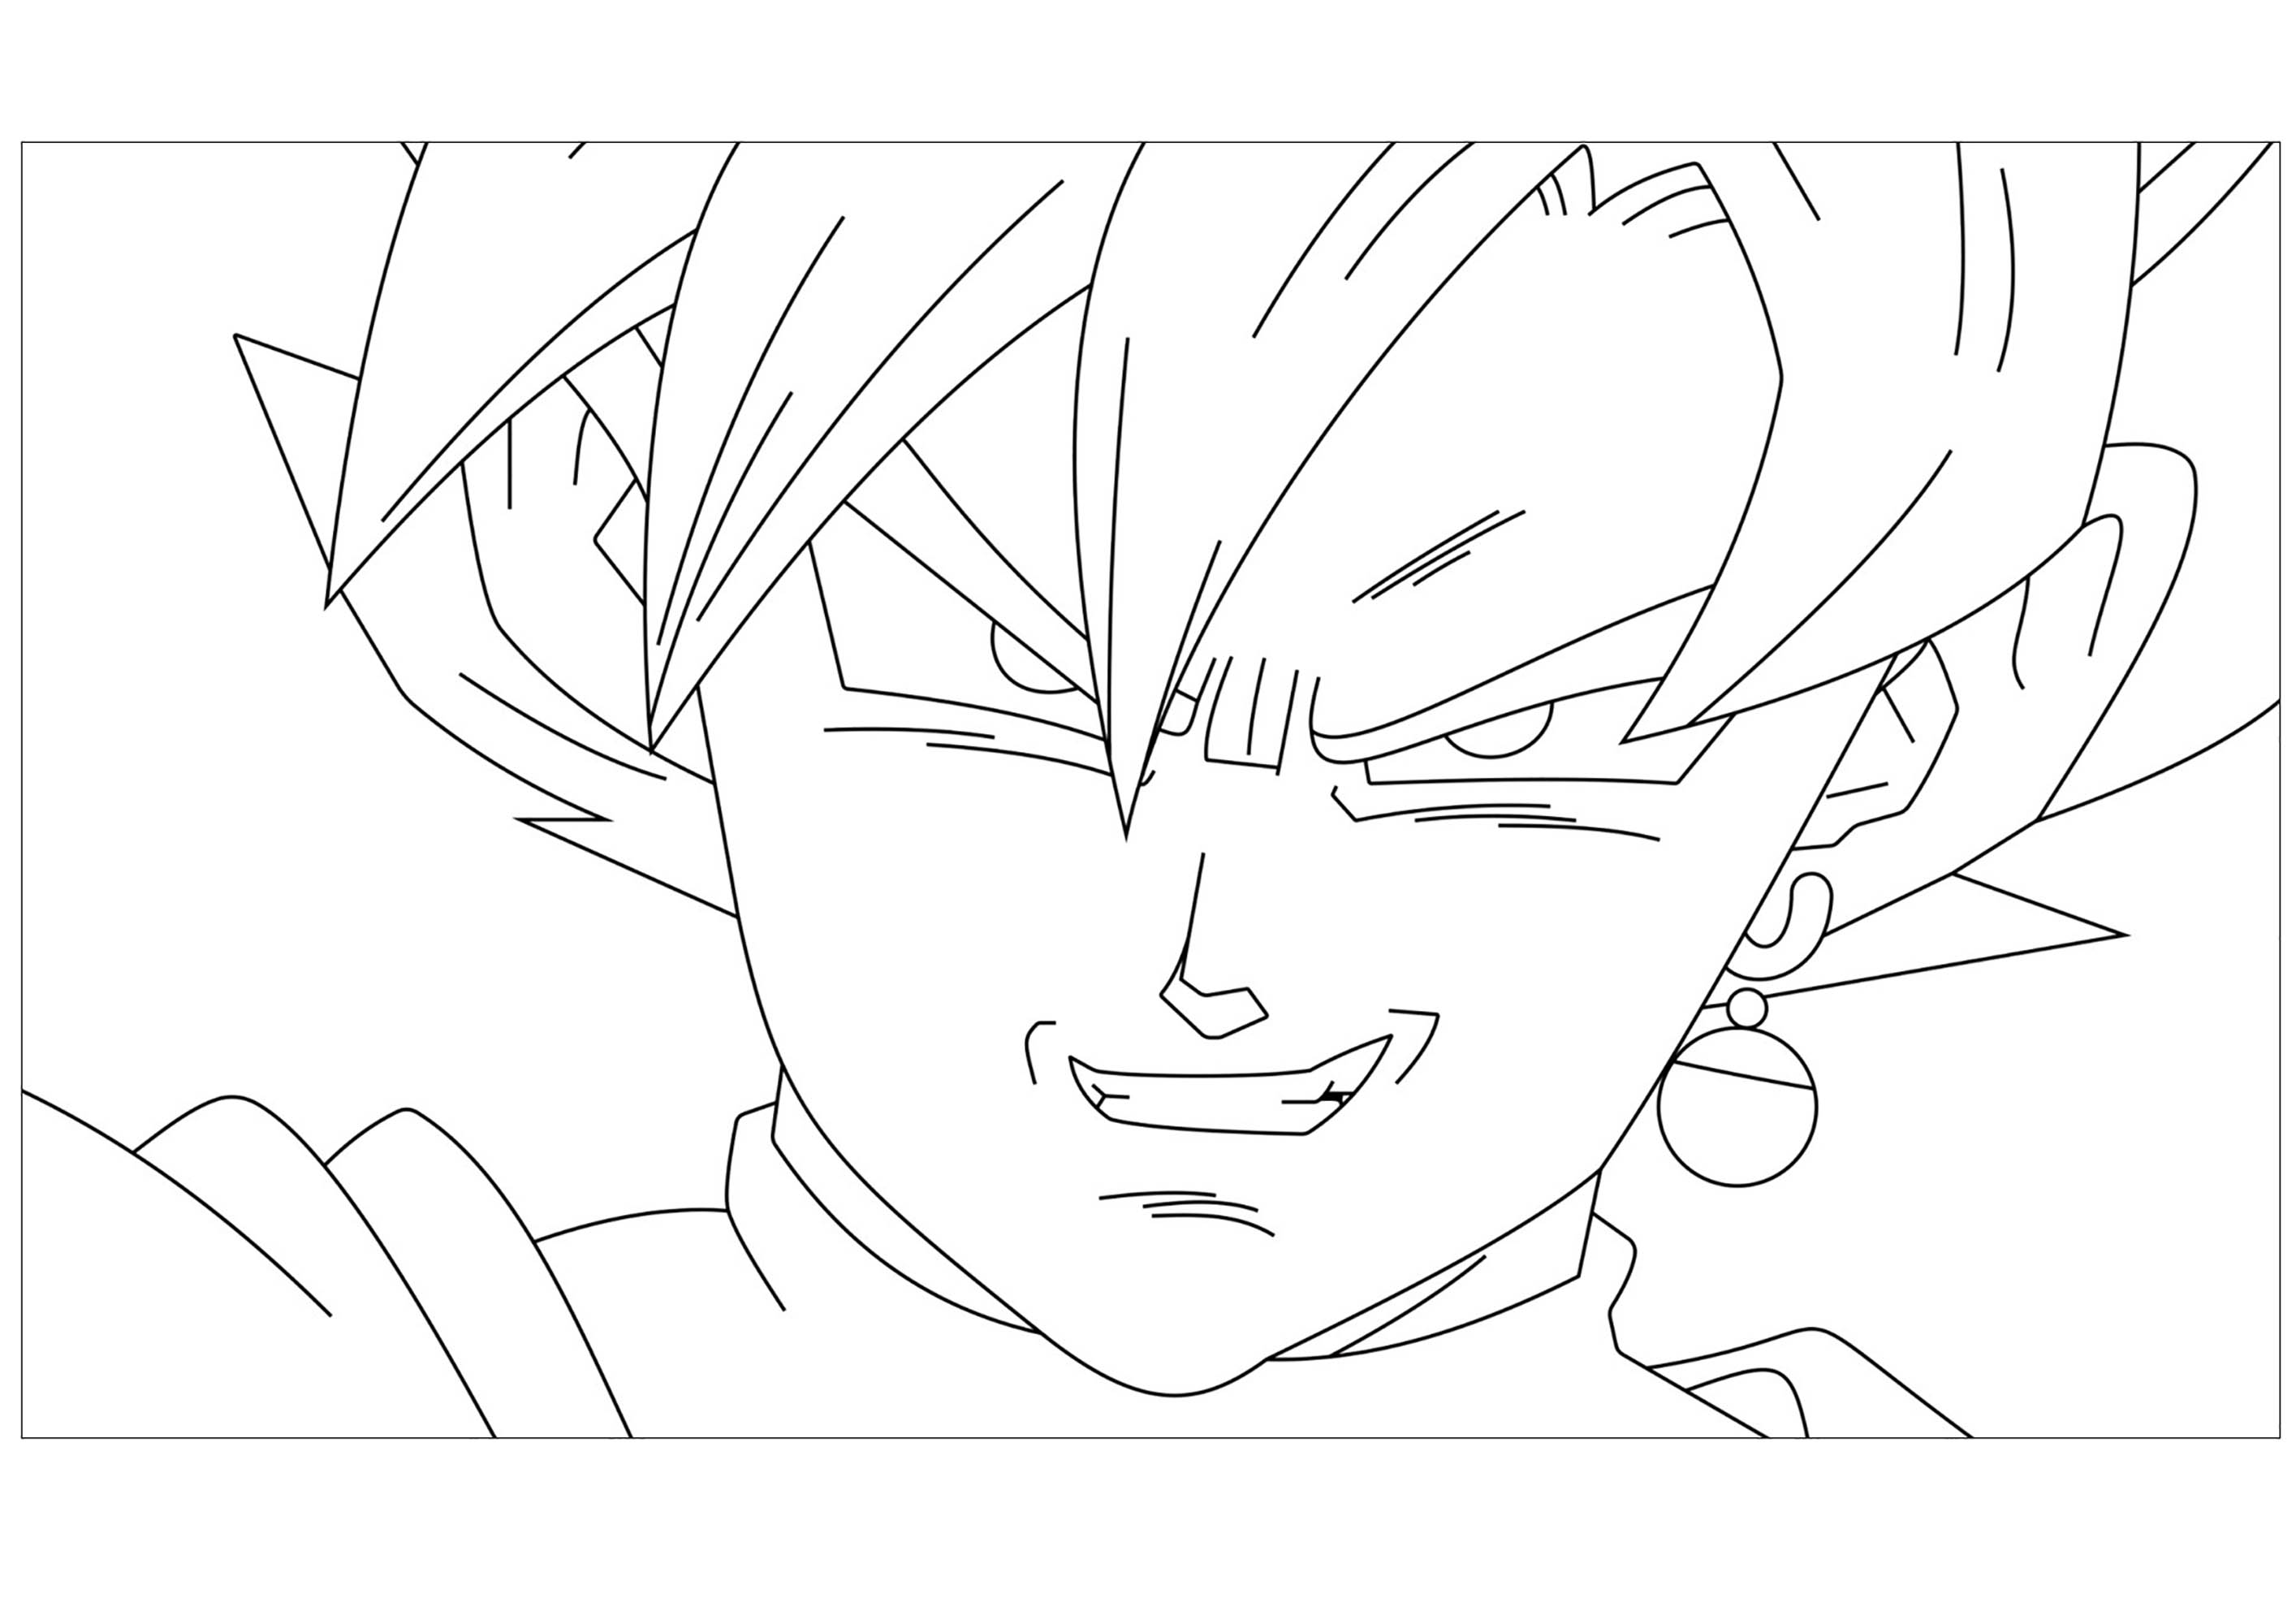 Página para colorear de Dragon Ball Super con pocos detalles para niños : Goku rosa negro